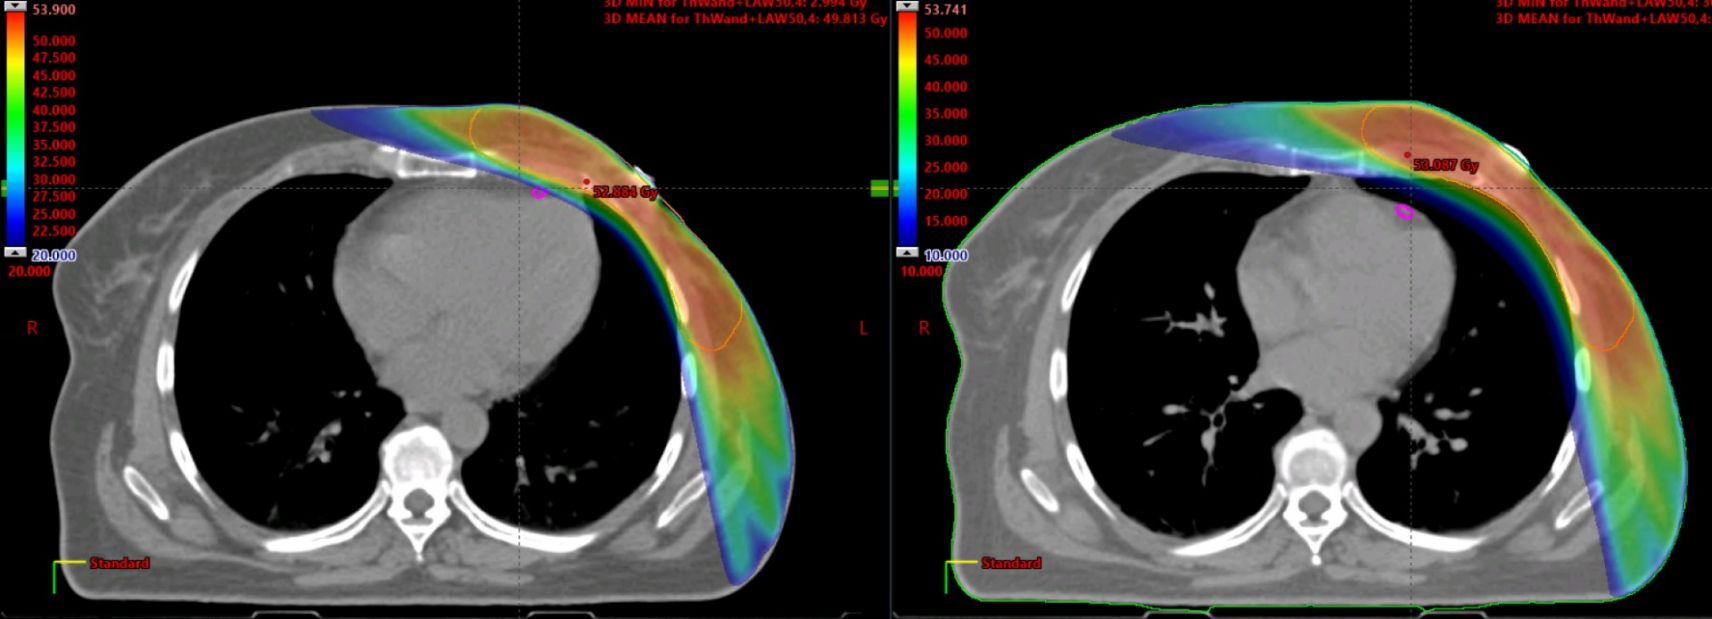 Dosisverteilung bei linksseitiger Mamma-Bestrahlung in Normallage (links) und in tiefer Inspiration (DIBH) (rechts). Schonung des vorderen Herzkranzgefäßes (Markierung) in DIBH-Technik.